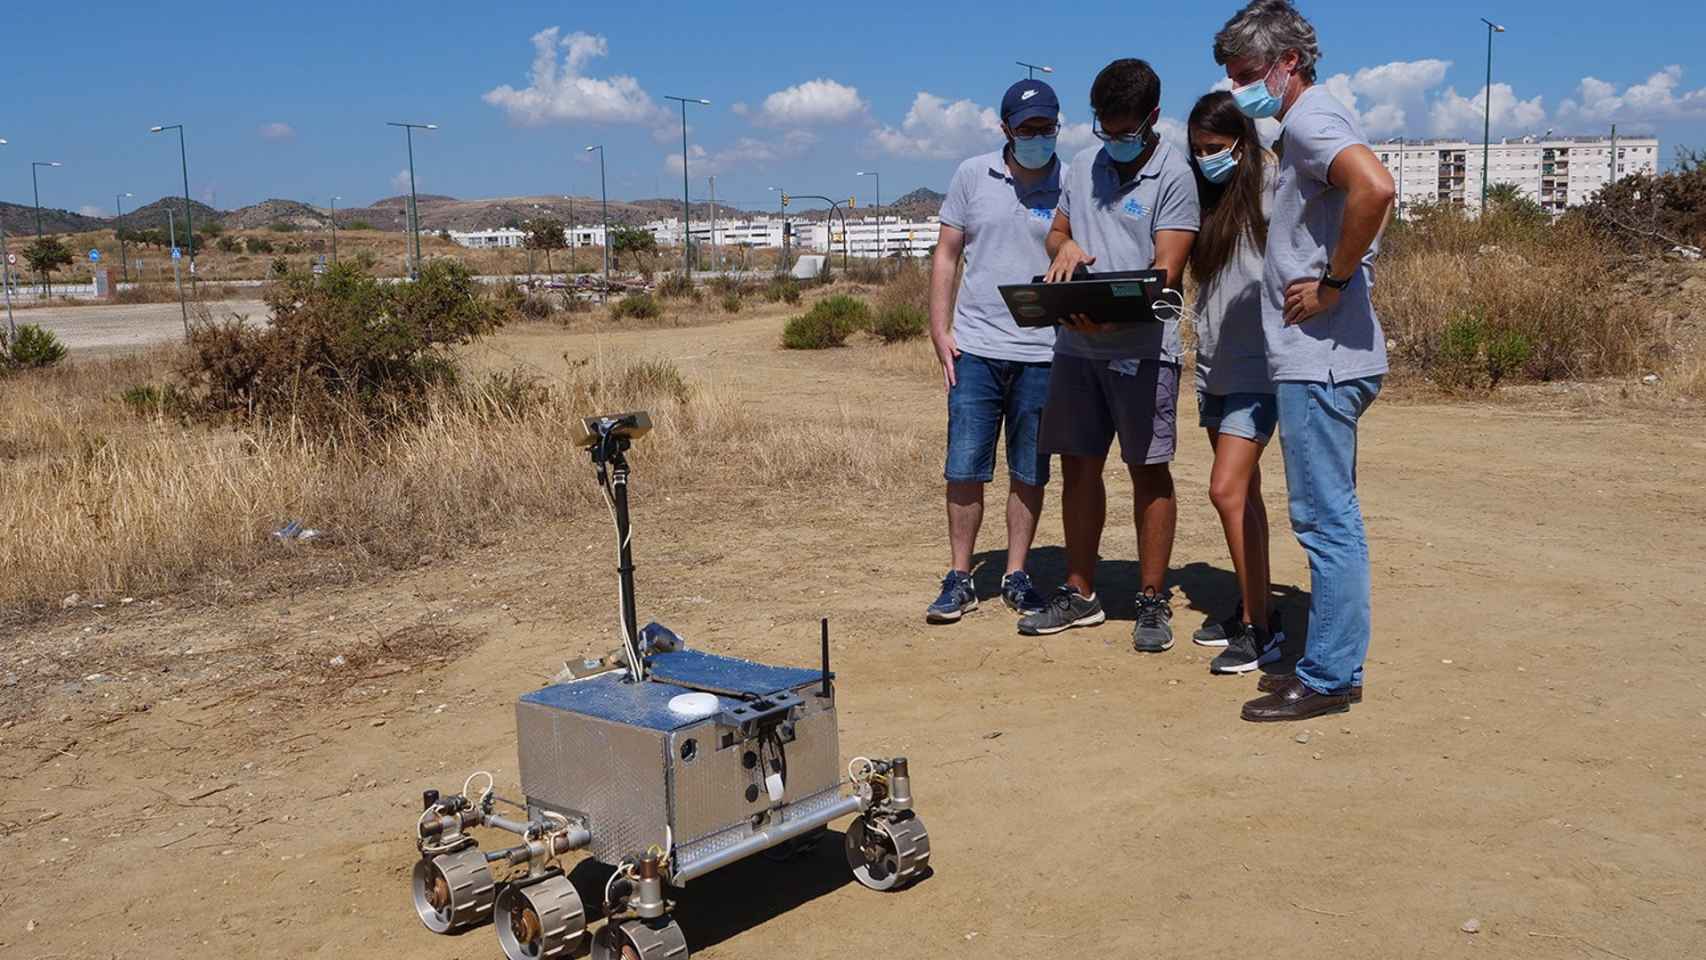 Uno de los proyectos está relacionado con un rover (vehículo) para la exploración de la superficie lunar